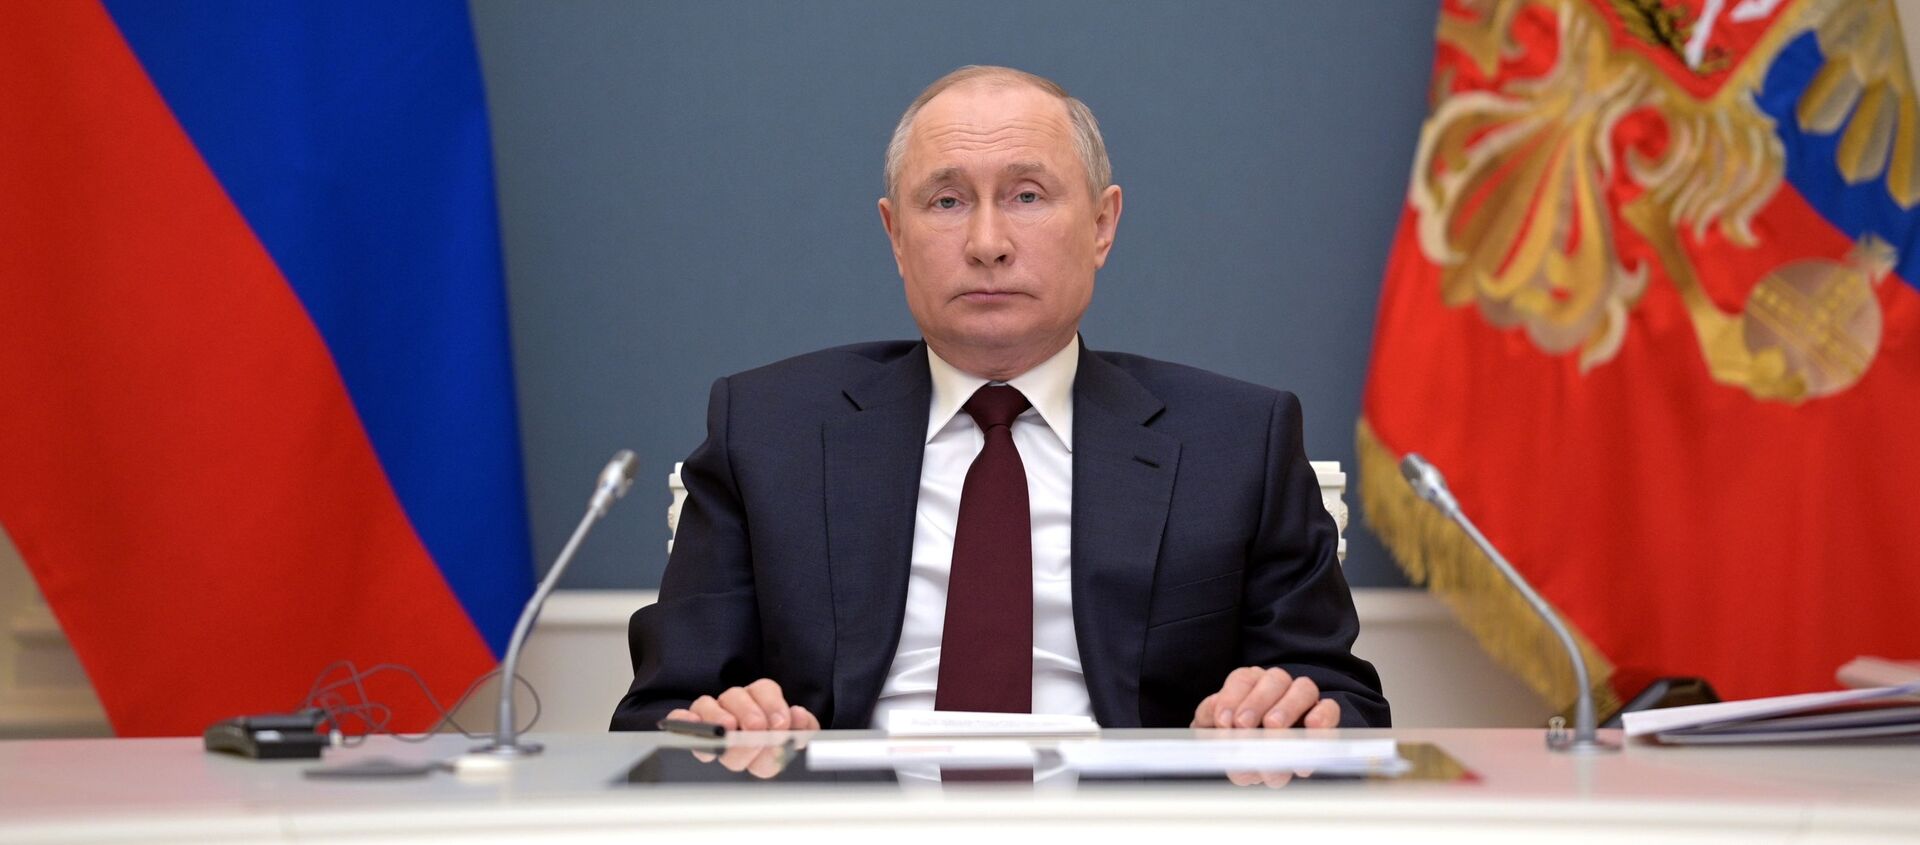 Президент РФ В. Путин выступил на онлайн-саммите по климату - Sputnik Беларусь, 1920, 22.04.2021